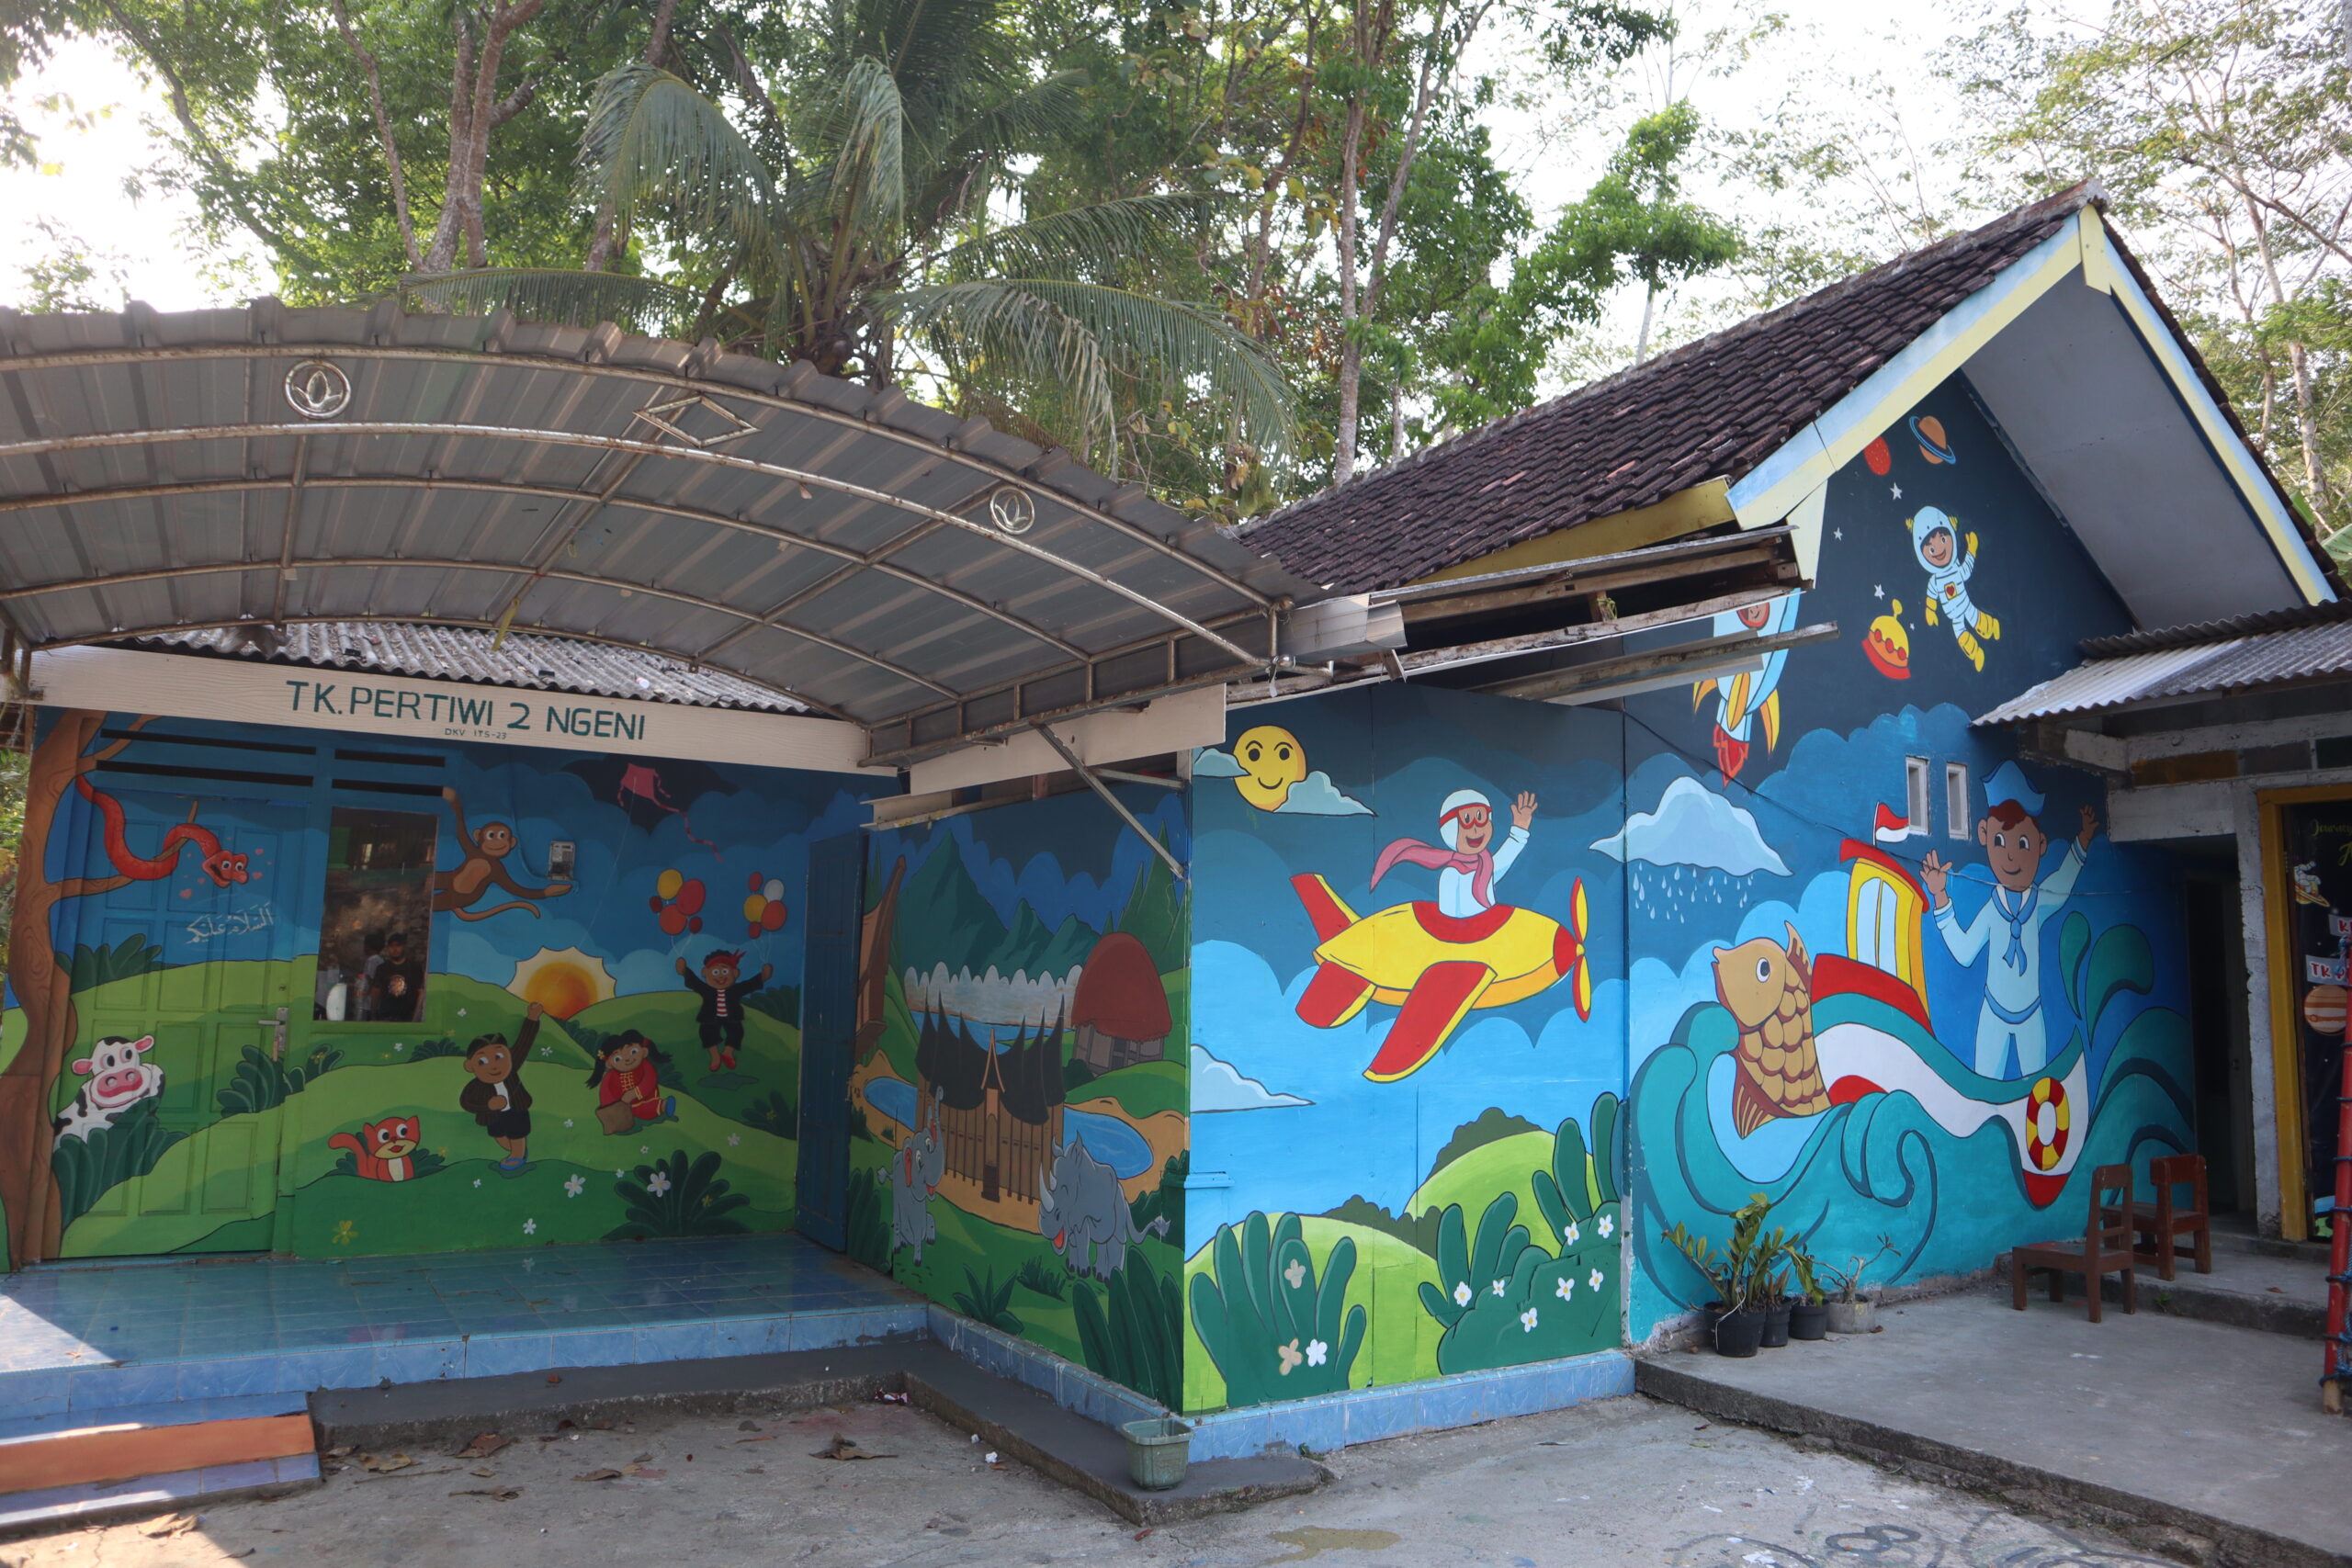 Gambar mural di dinding TK Pertiwi II Ngeni, Blitar